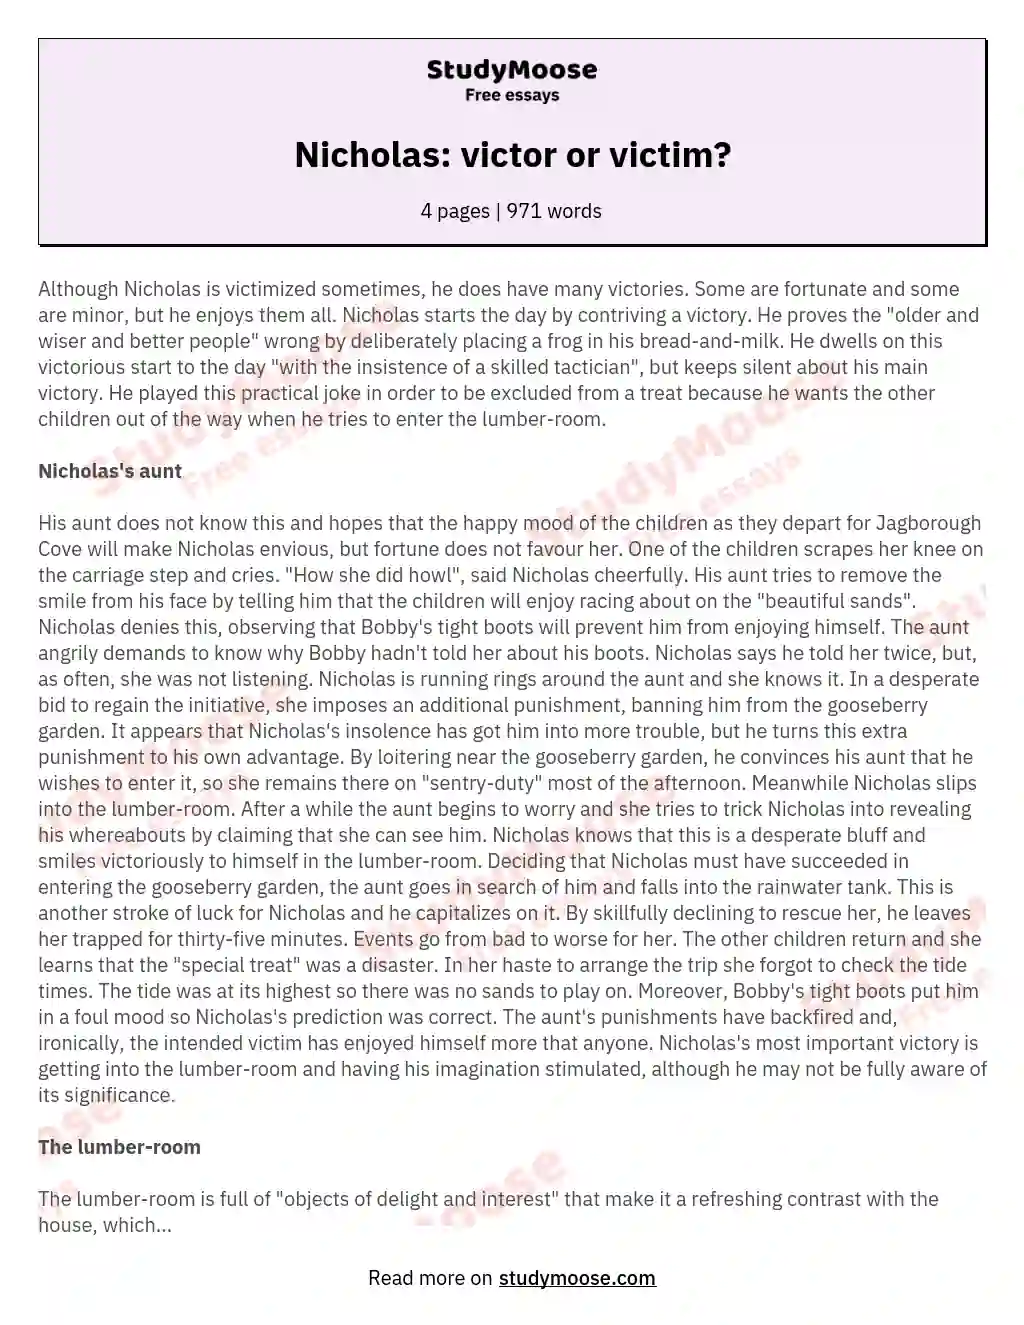 Nicholas: victor or victim? essay